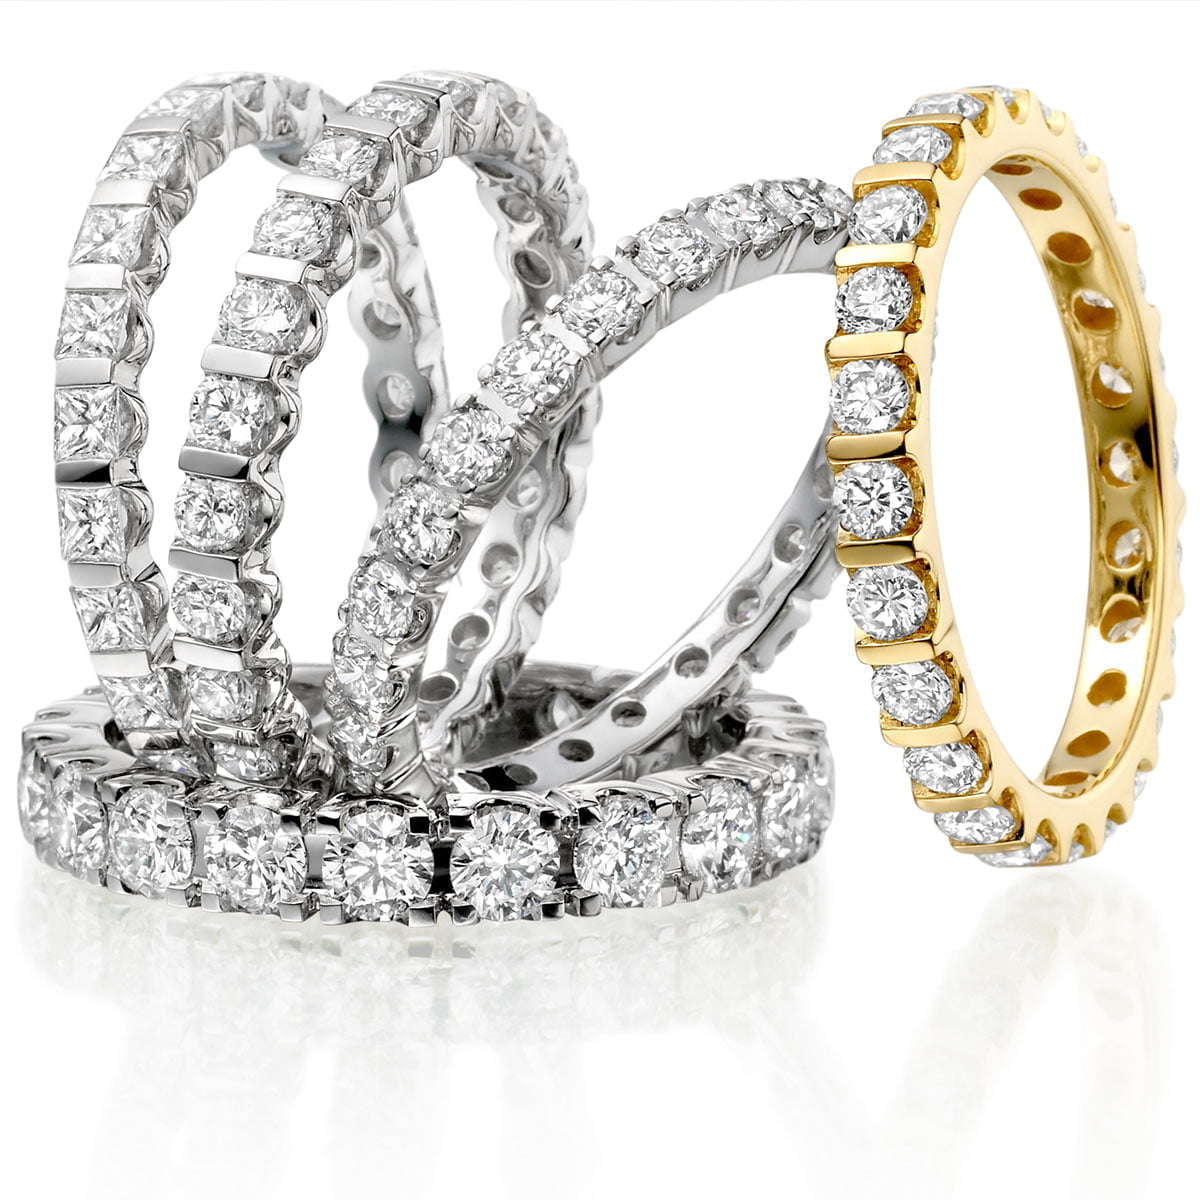 Vintage Style Wedding Rings – Jessica Flinn Fine Jewellery